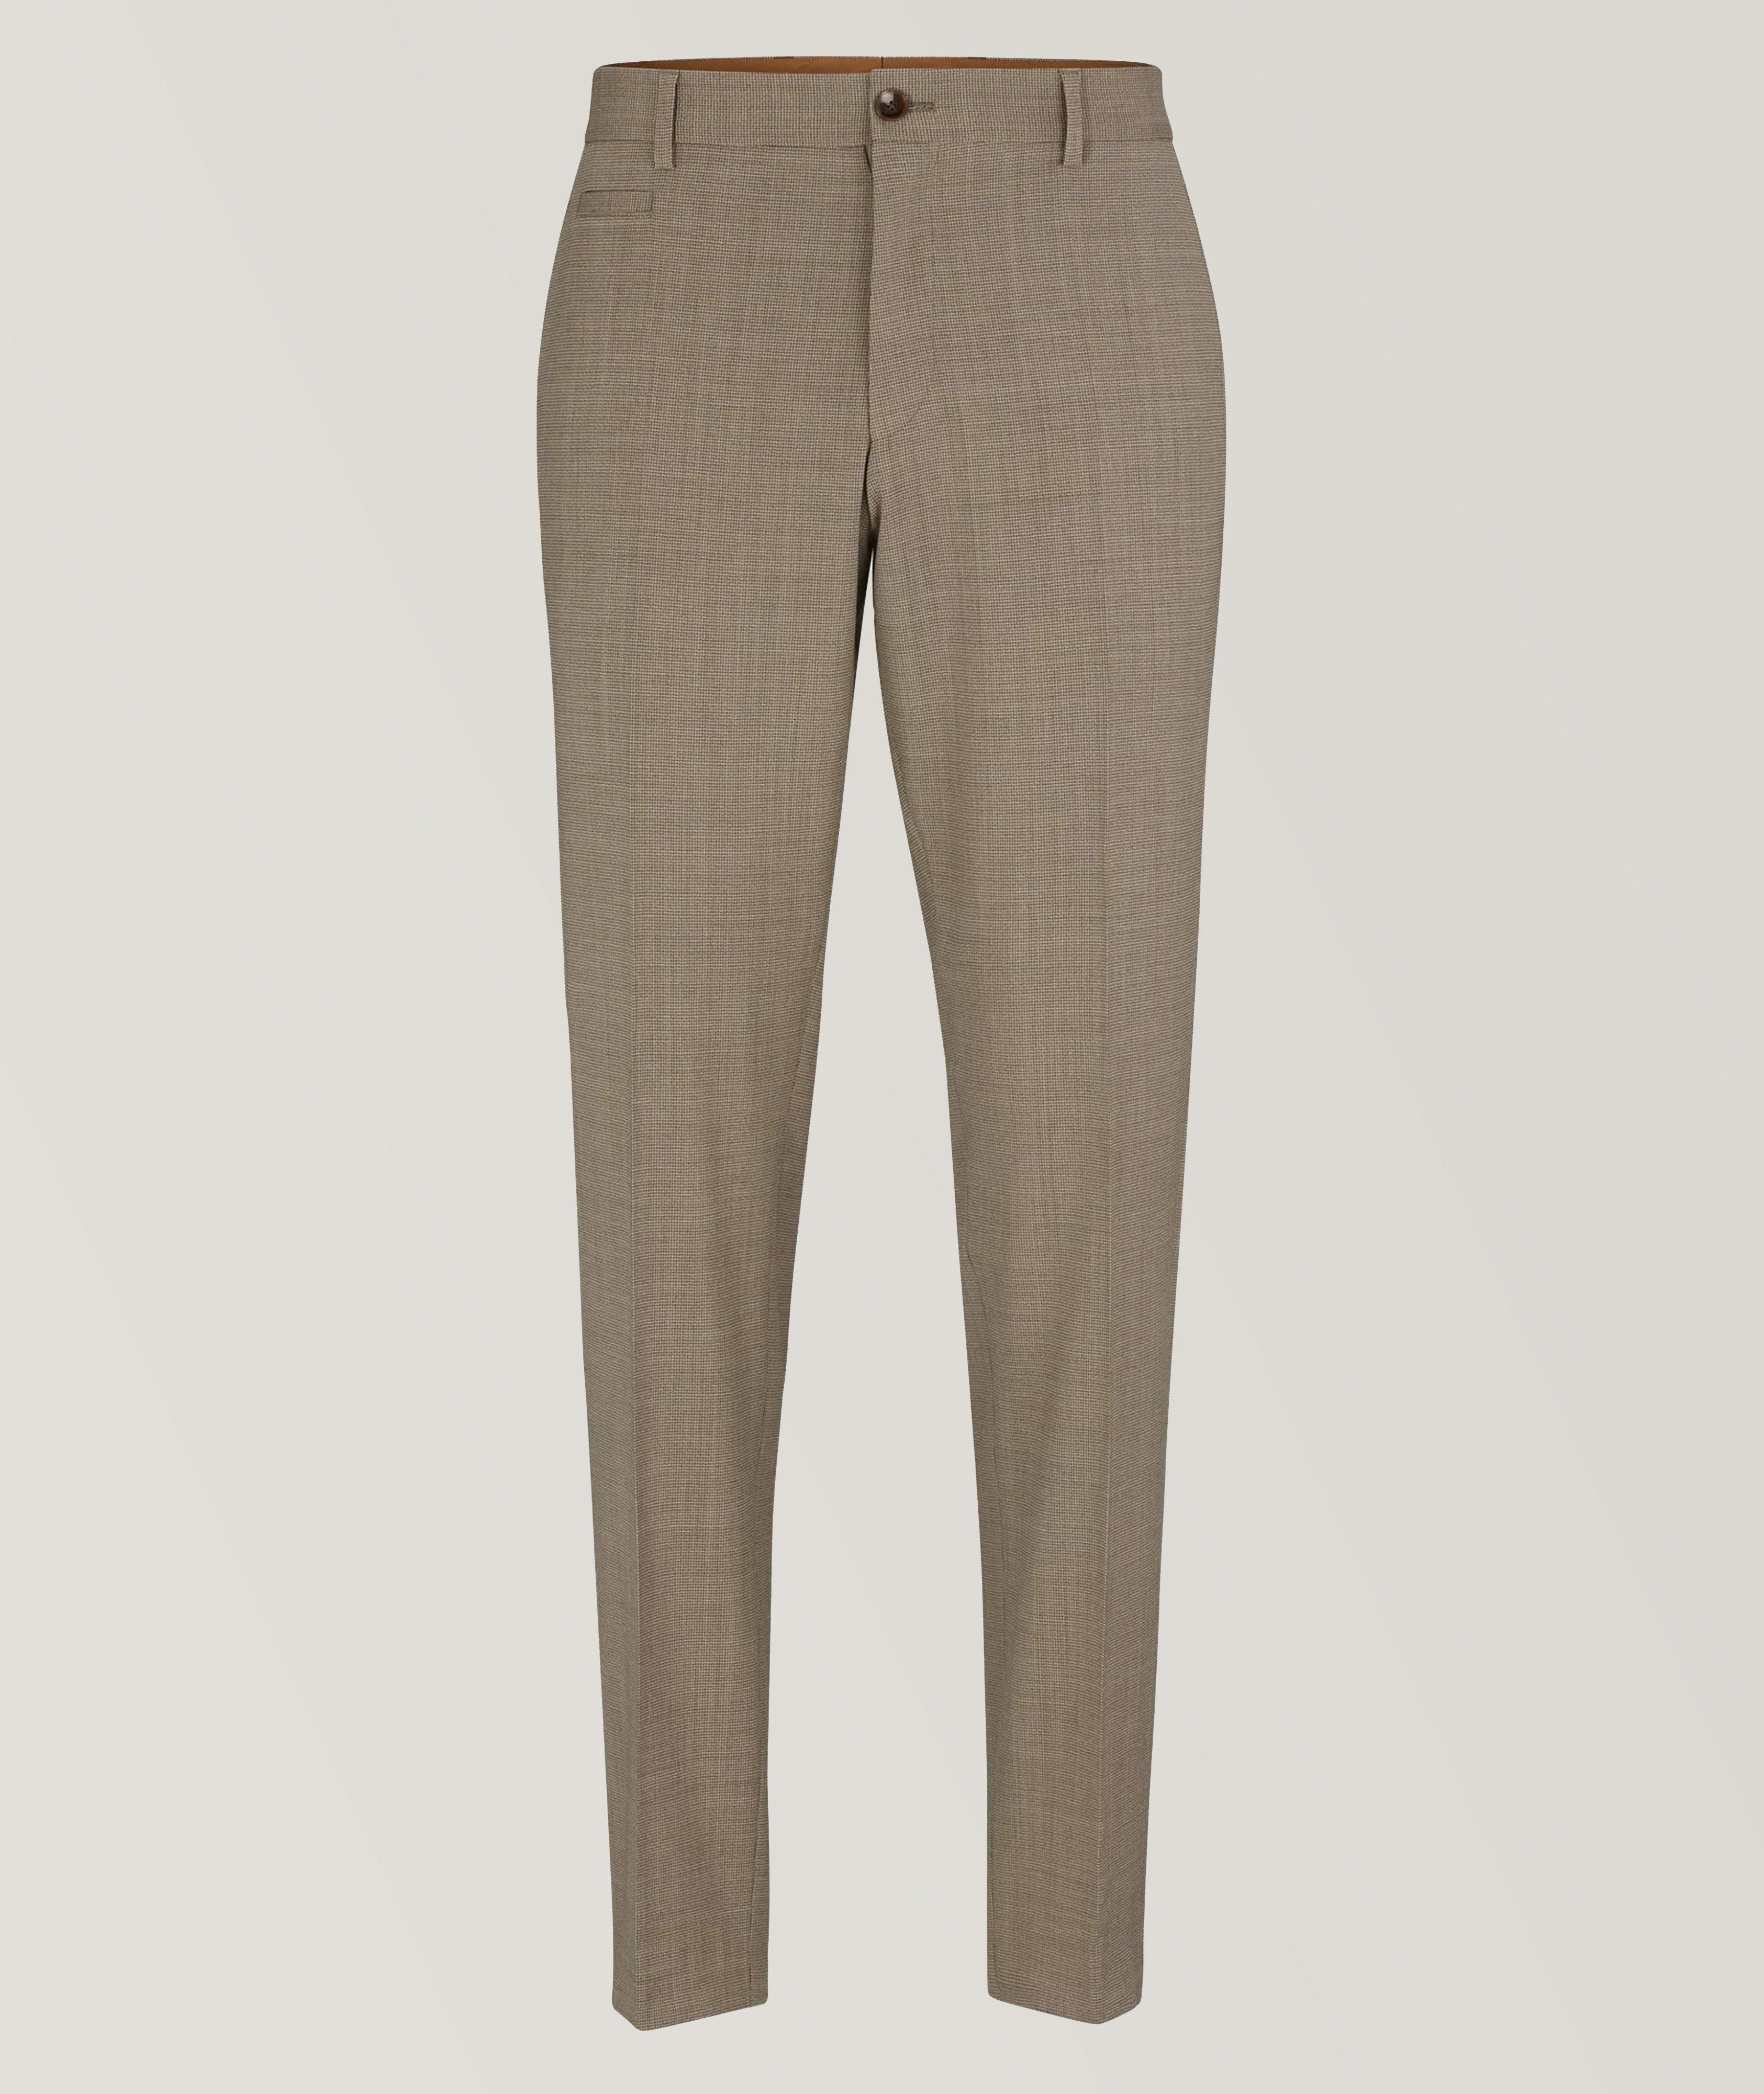 Slim-Fit Micro-Patterned Virgin Wool Trousers image 0